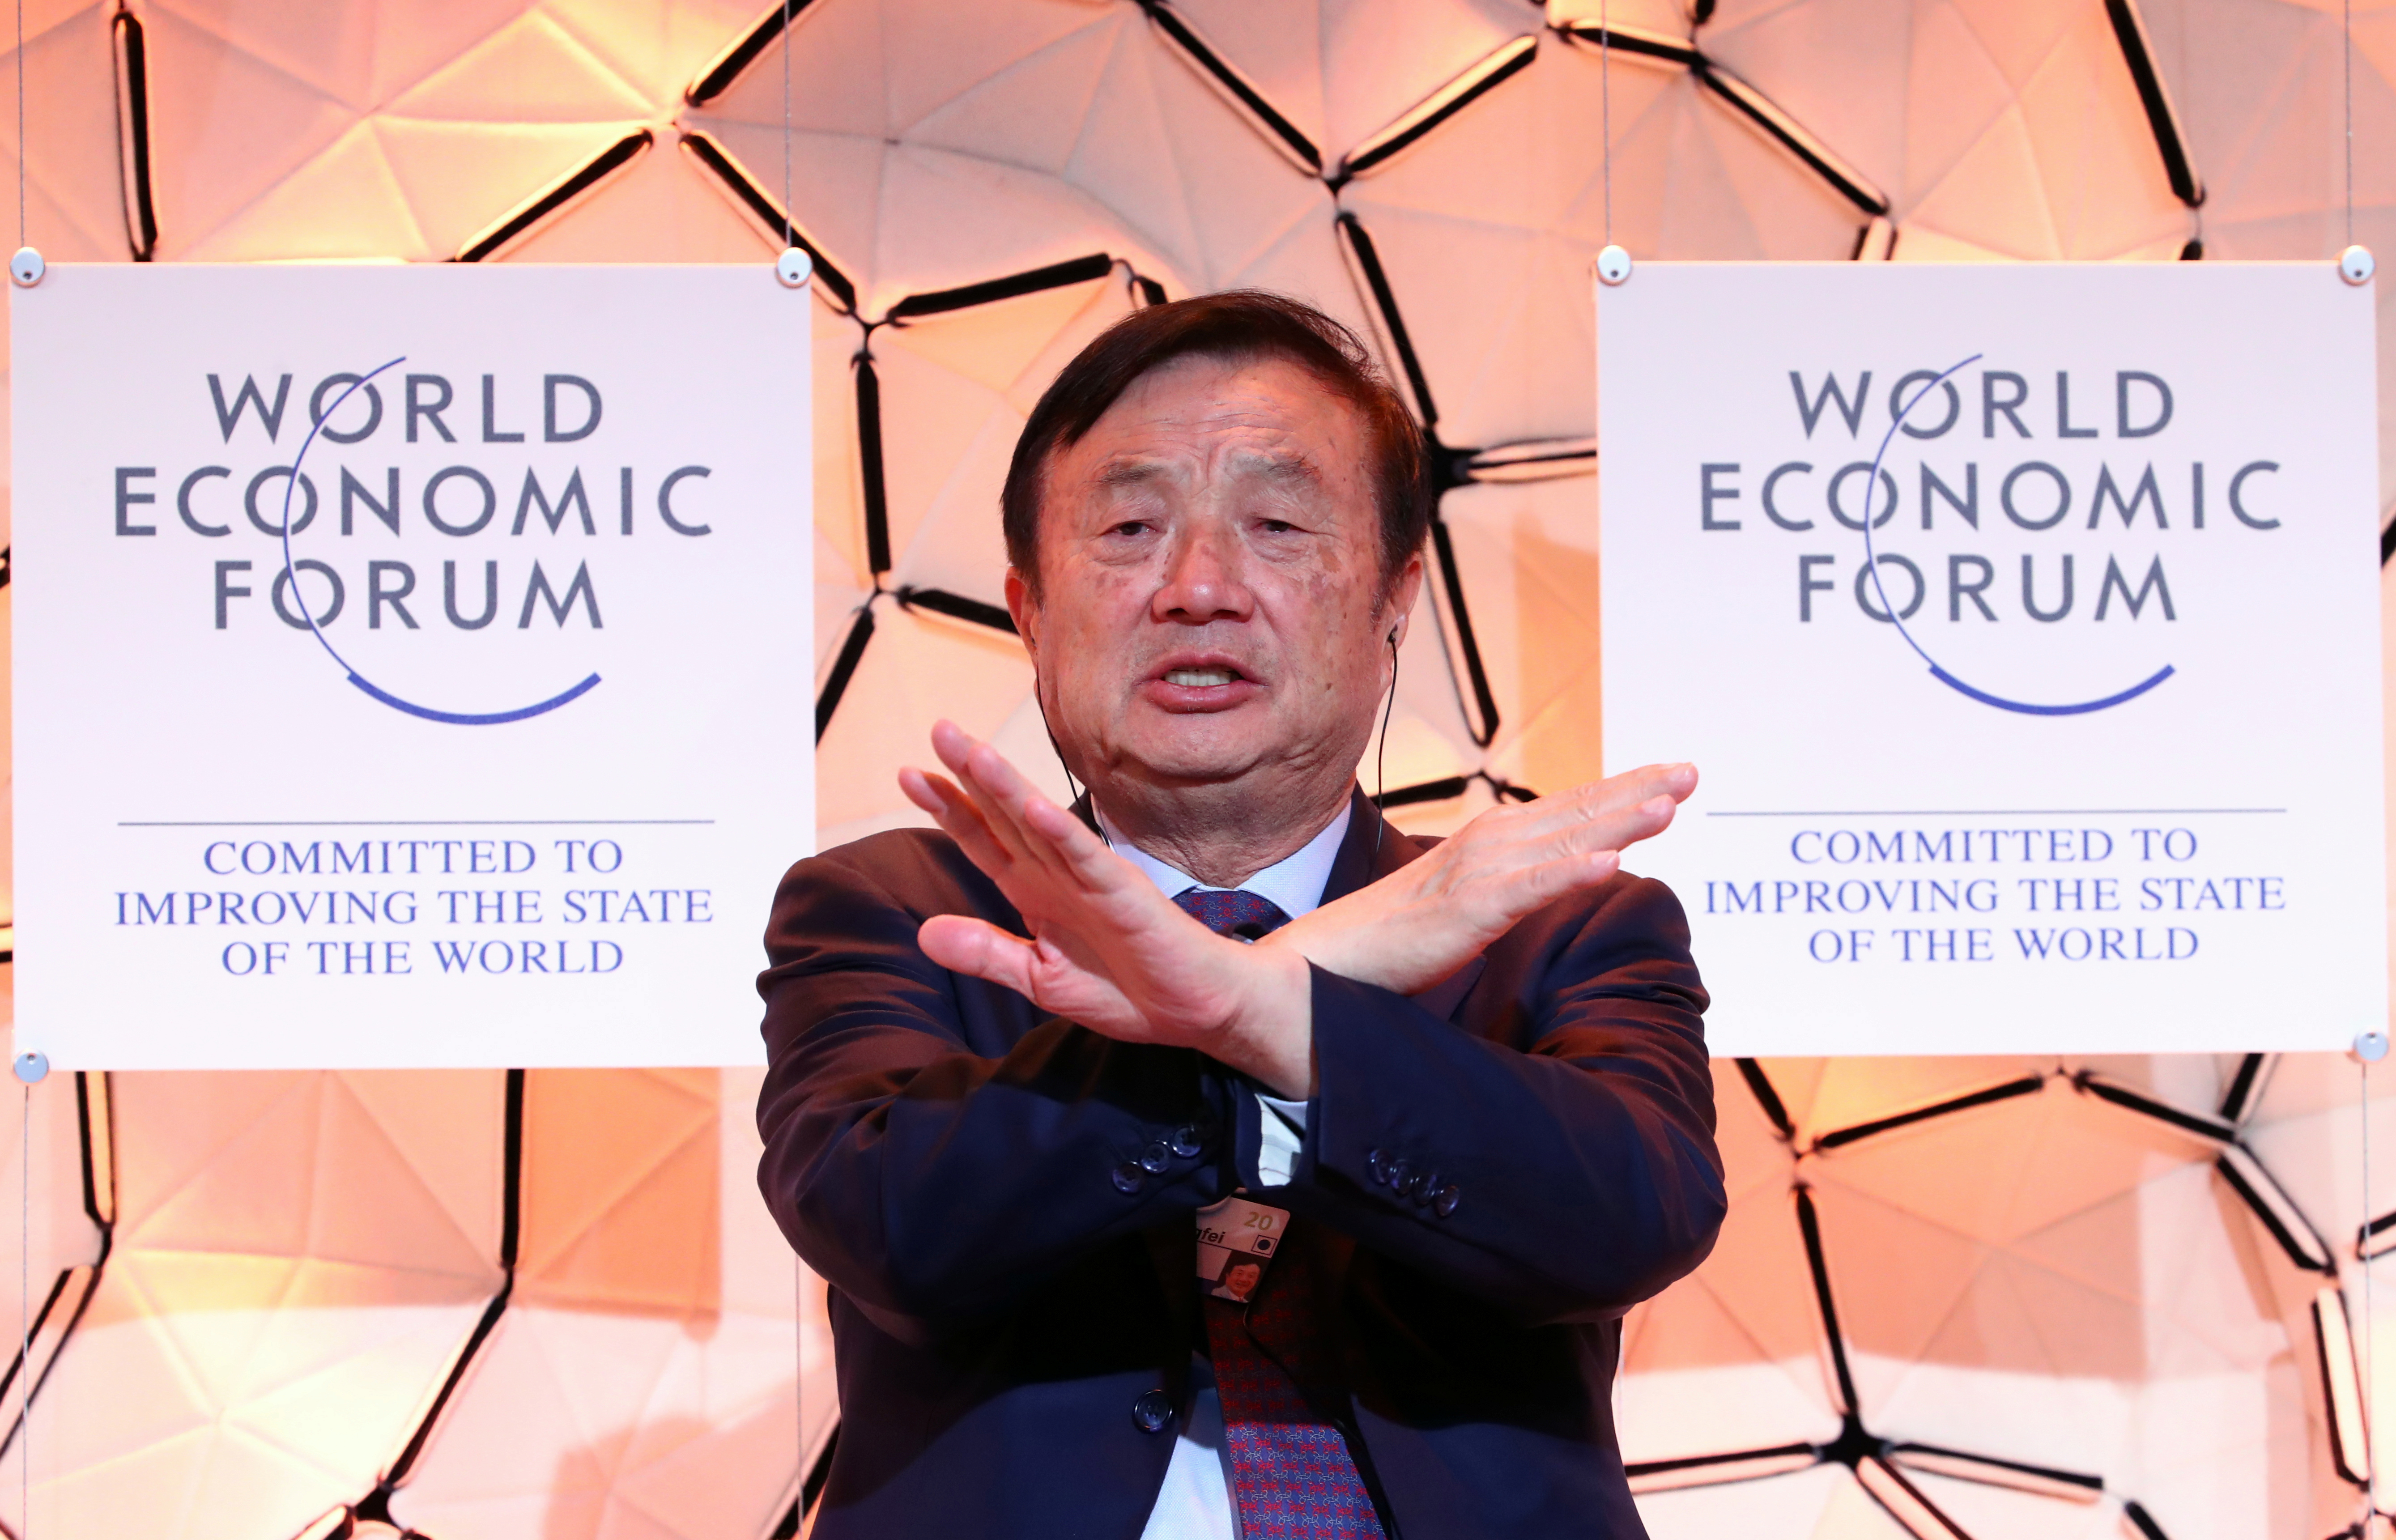 FOTO DE ARCHIVO: Ren Zhengfei ex miembro del Ejército Popular de Liberación de China y fundador y CEO de Huawei Technologies durante el World Economic Forum (WEF) en Davos, Suiza en enero de 2020 (Reuters)